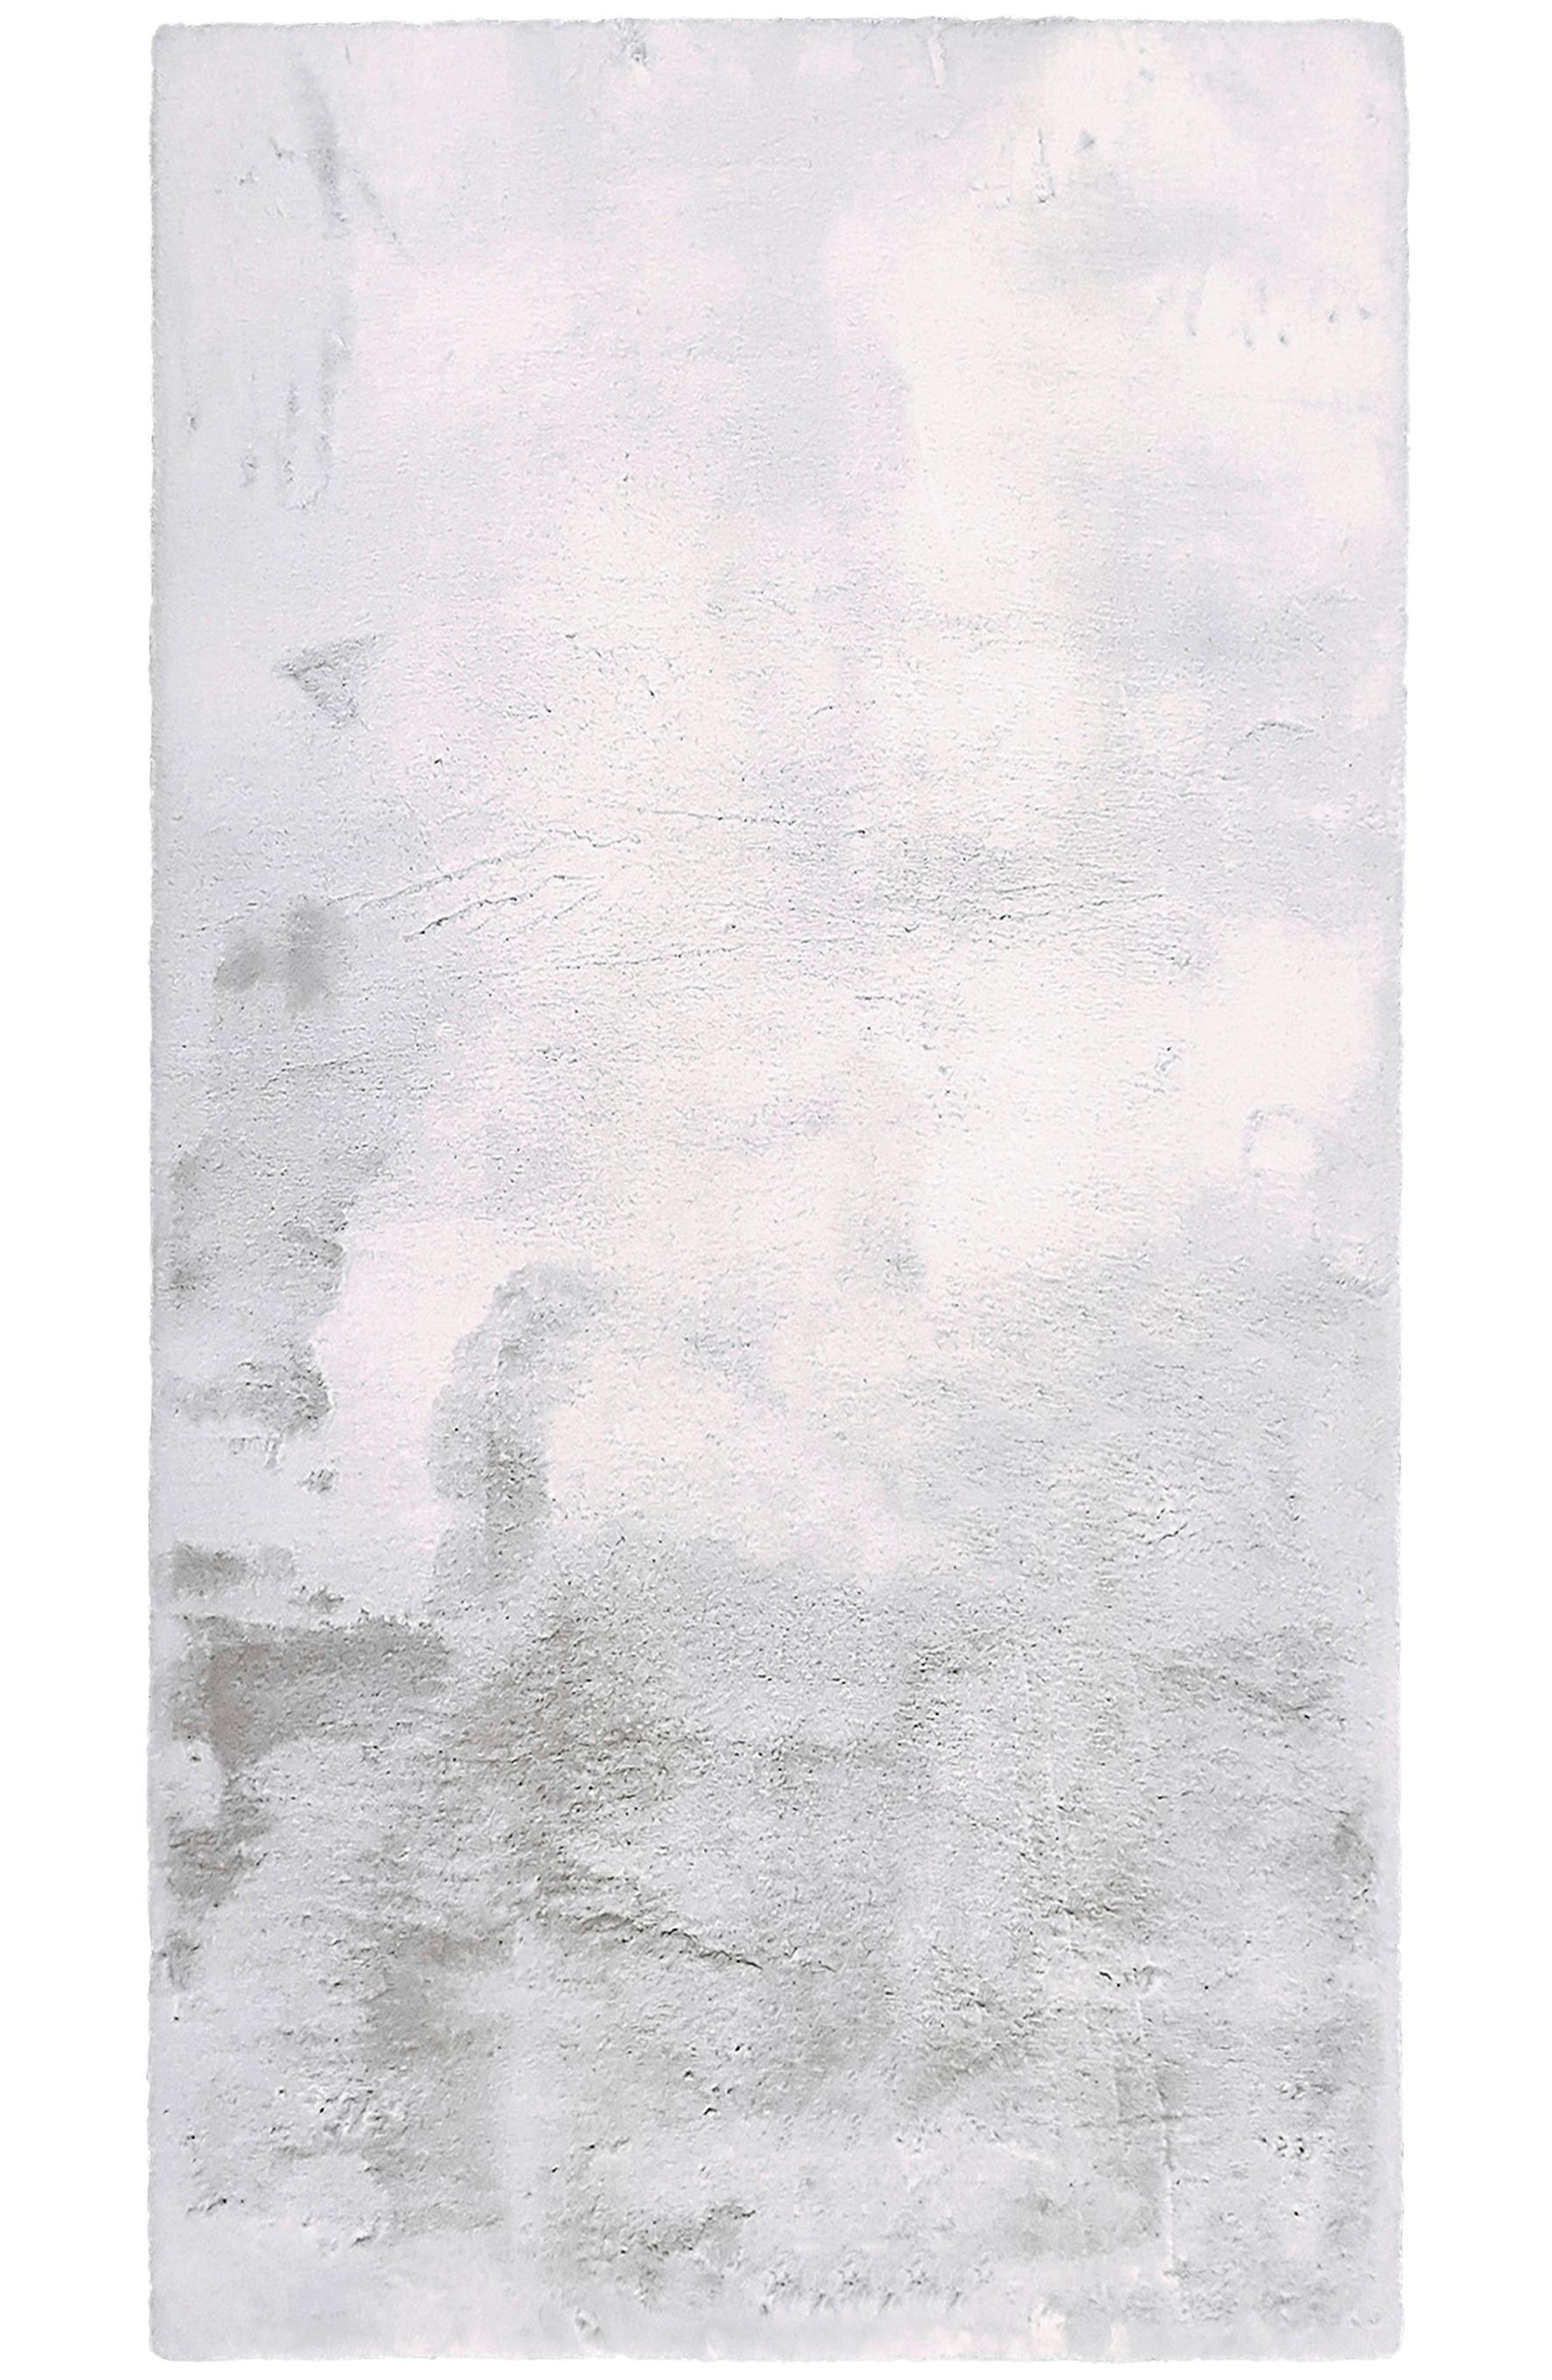 Umjetno Krzno Denise 1 -Akt- - bijela/srebrne boje, Romantik / Landhaus, tekstil/krzno (80/150cm) - Modern Living